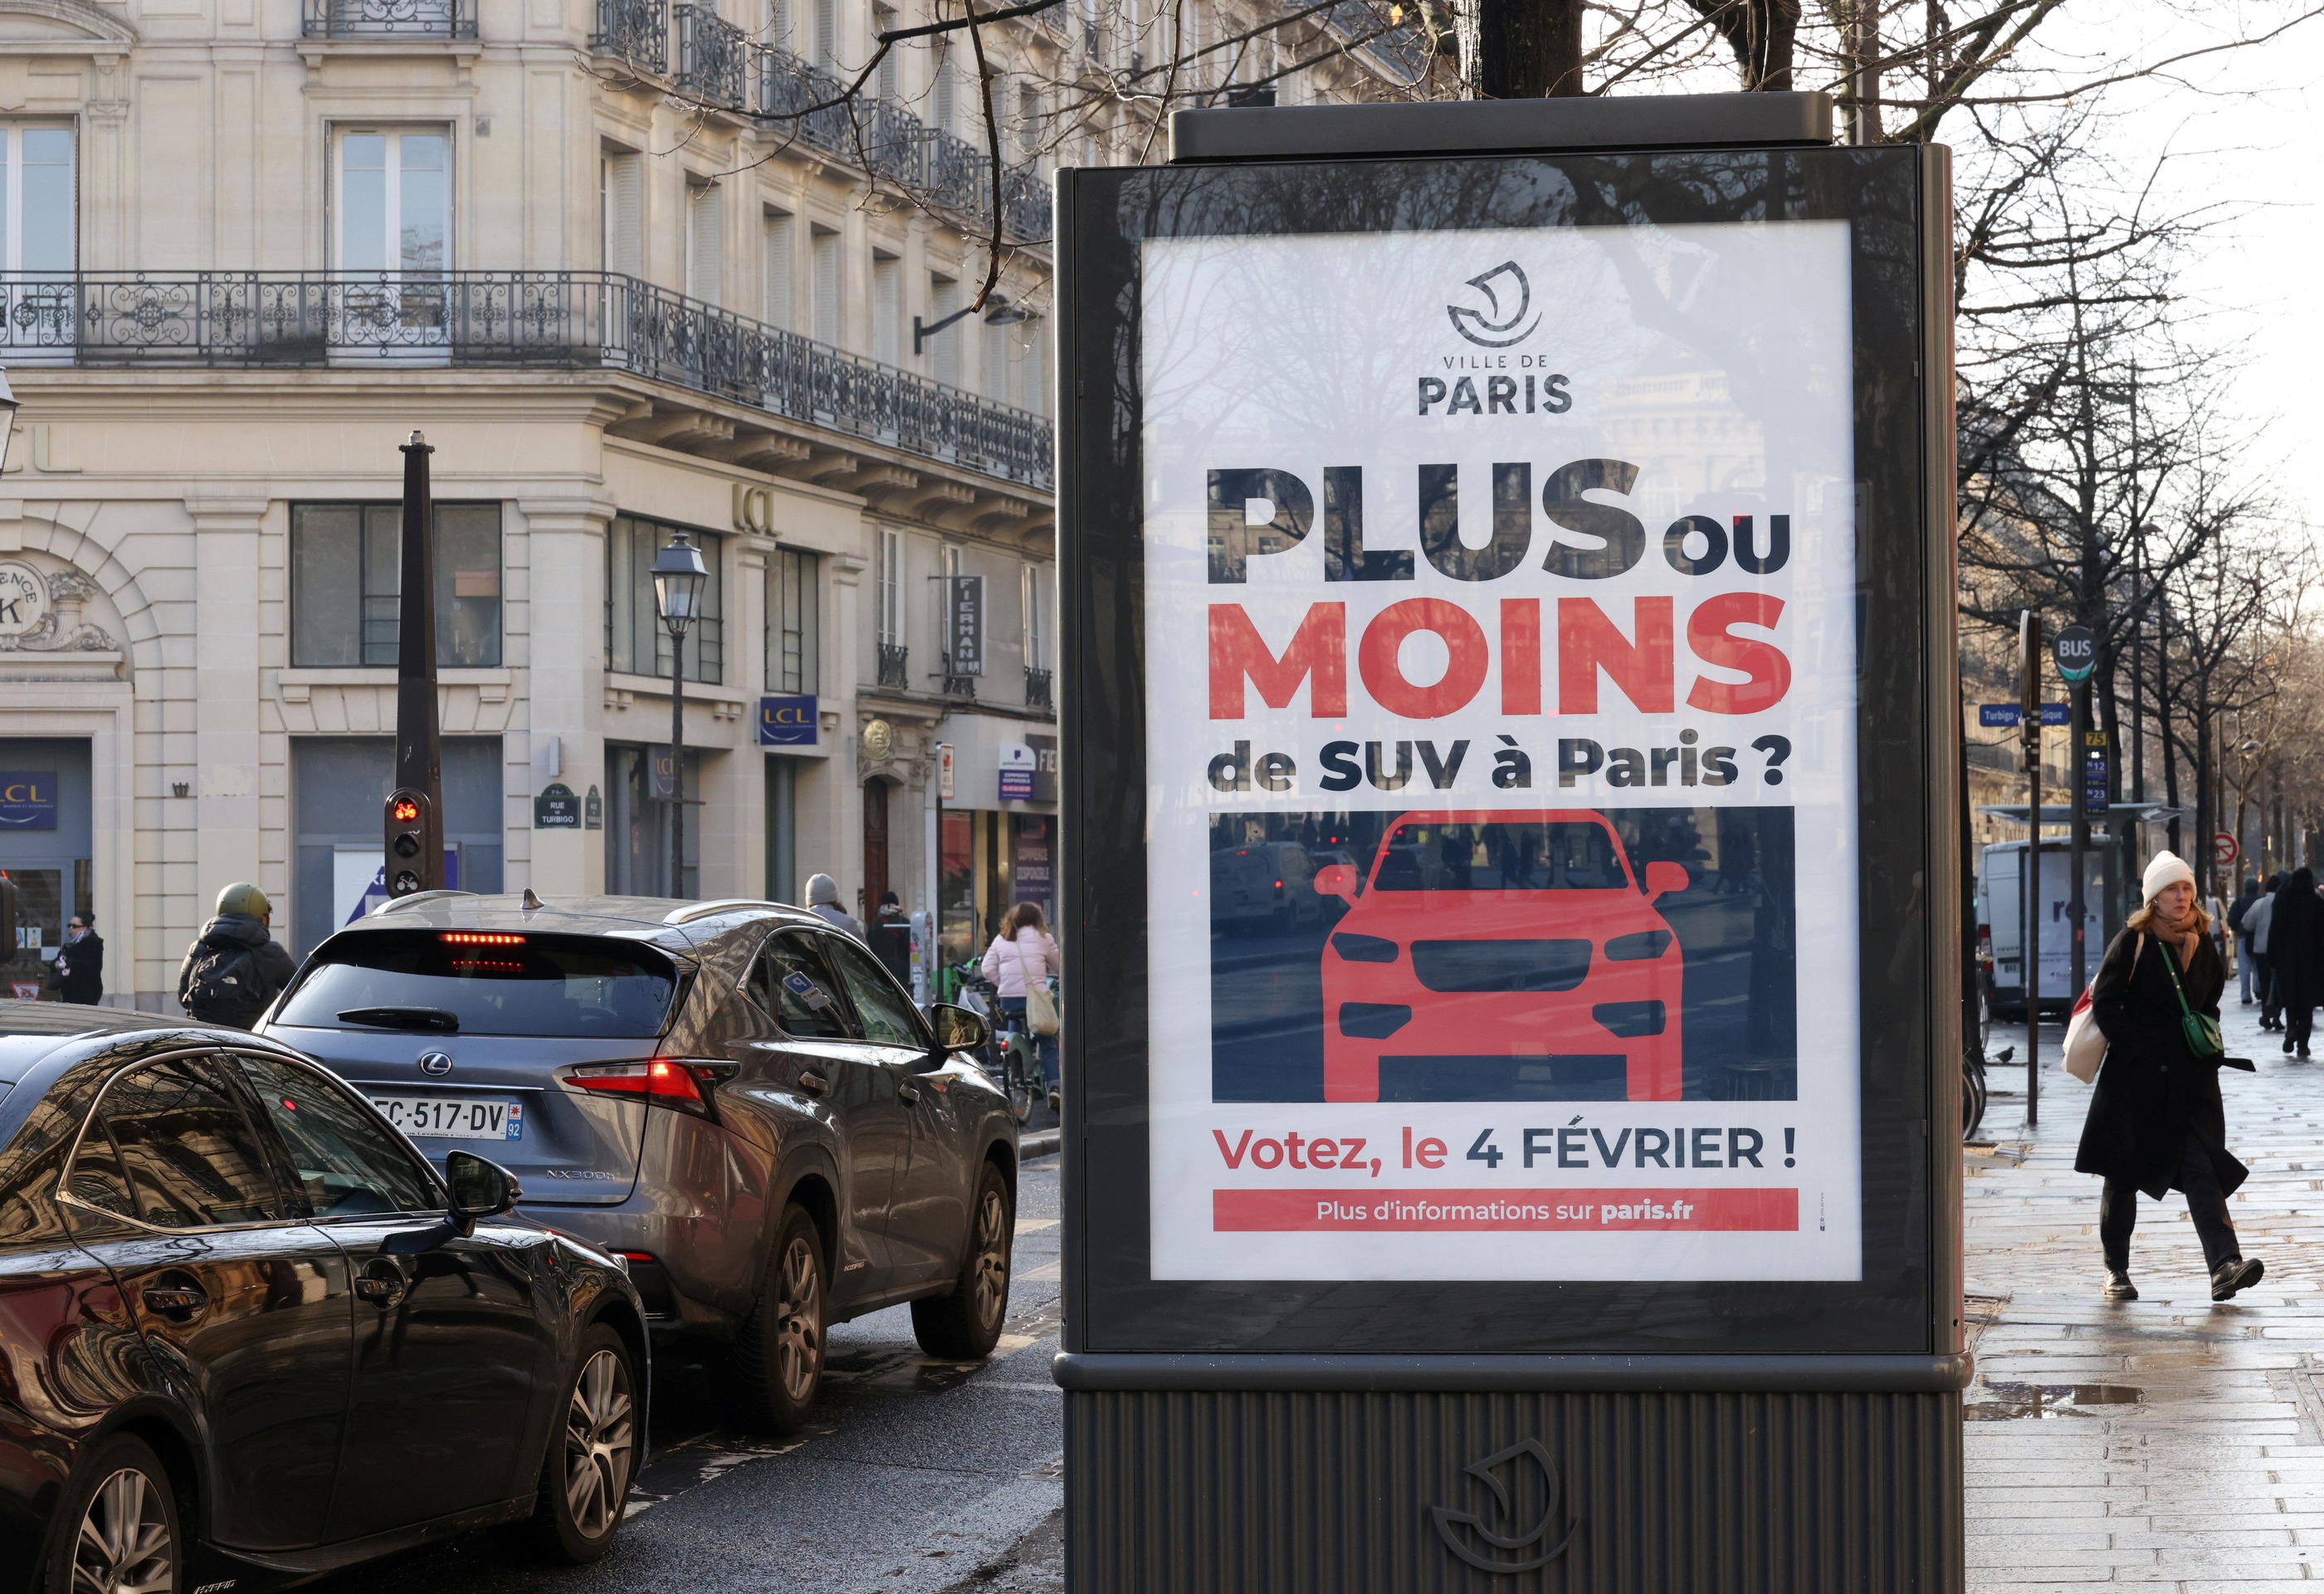 En février, les Parisiens avaient voté pour un stationnement plus onéreux pour les SUV. LP/Delphine Goldsztejn